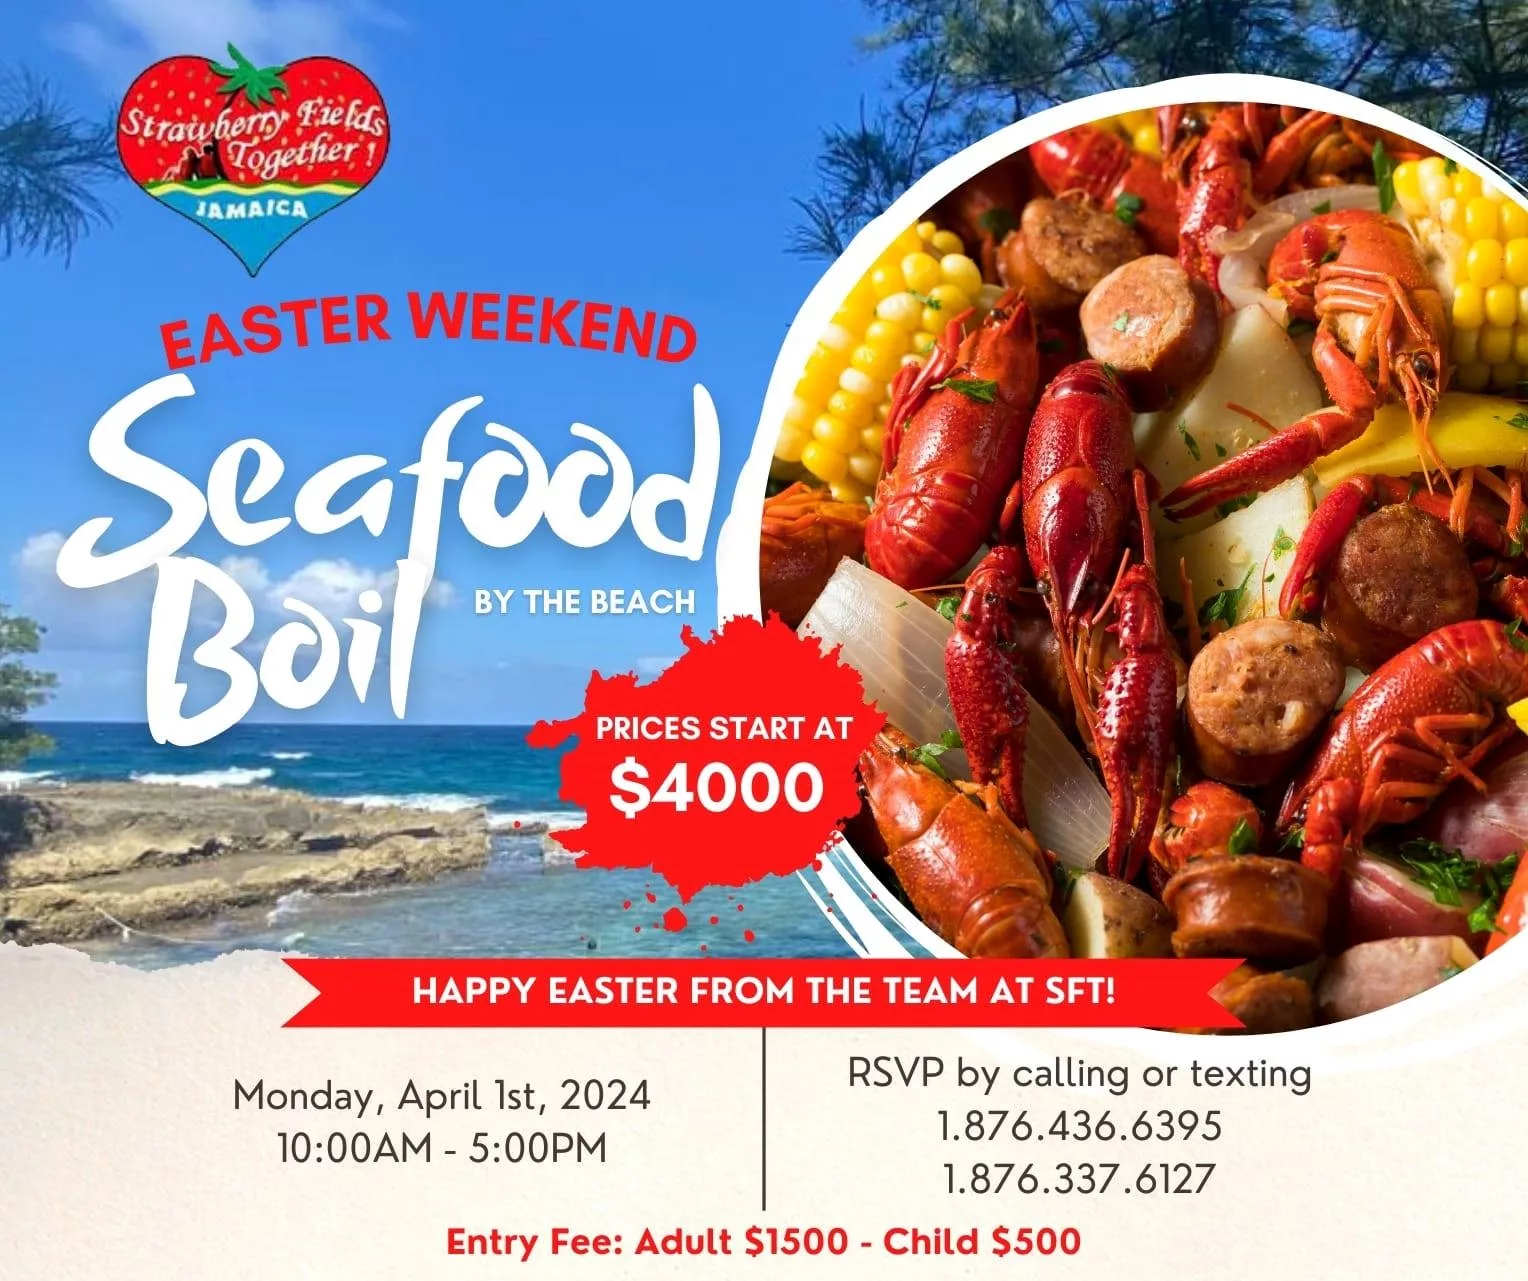 Easter Weekend Seafood Boil